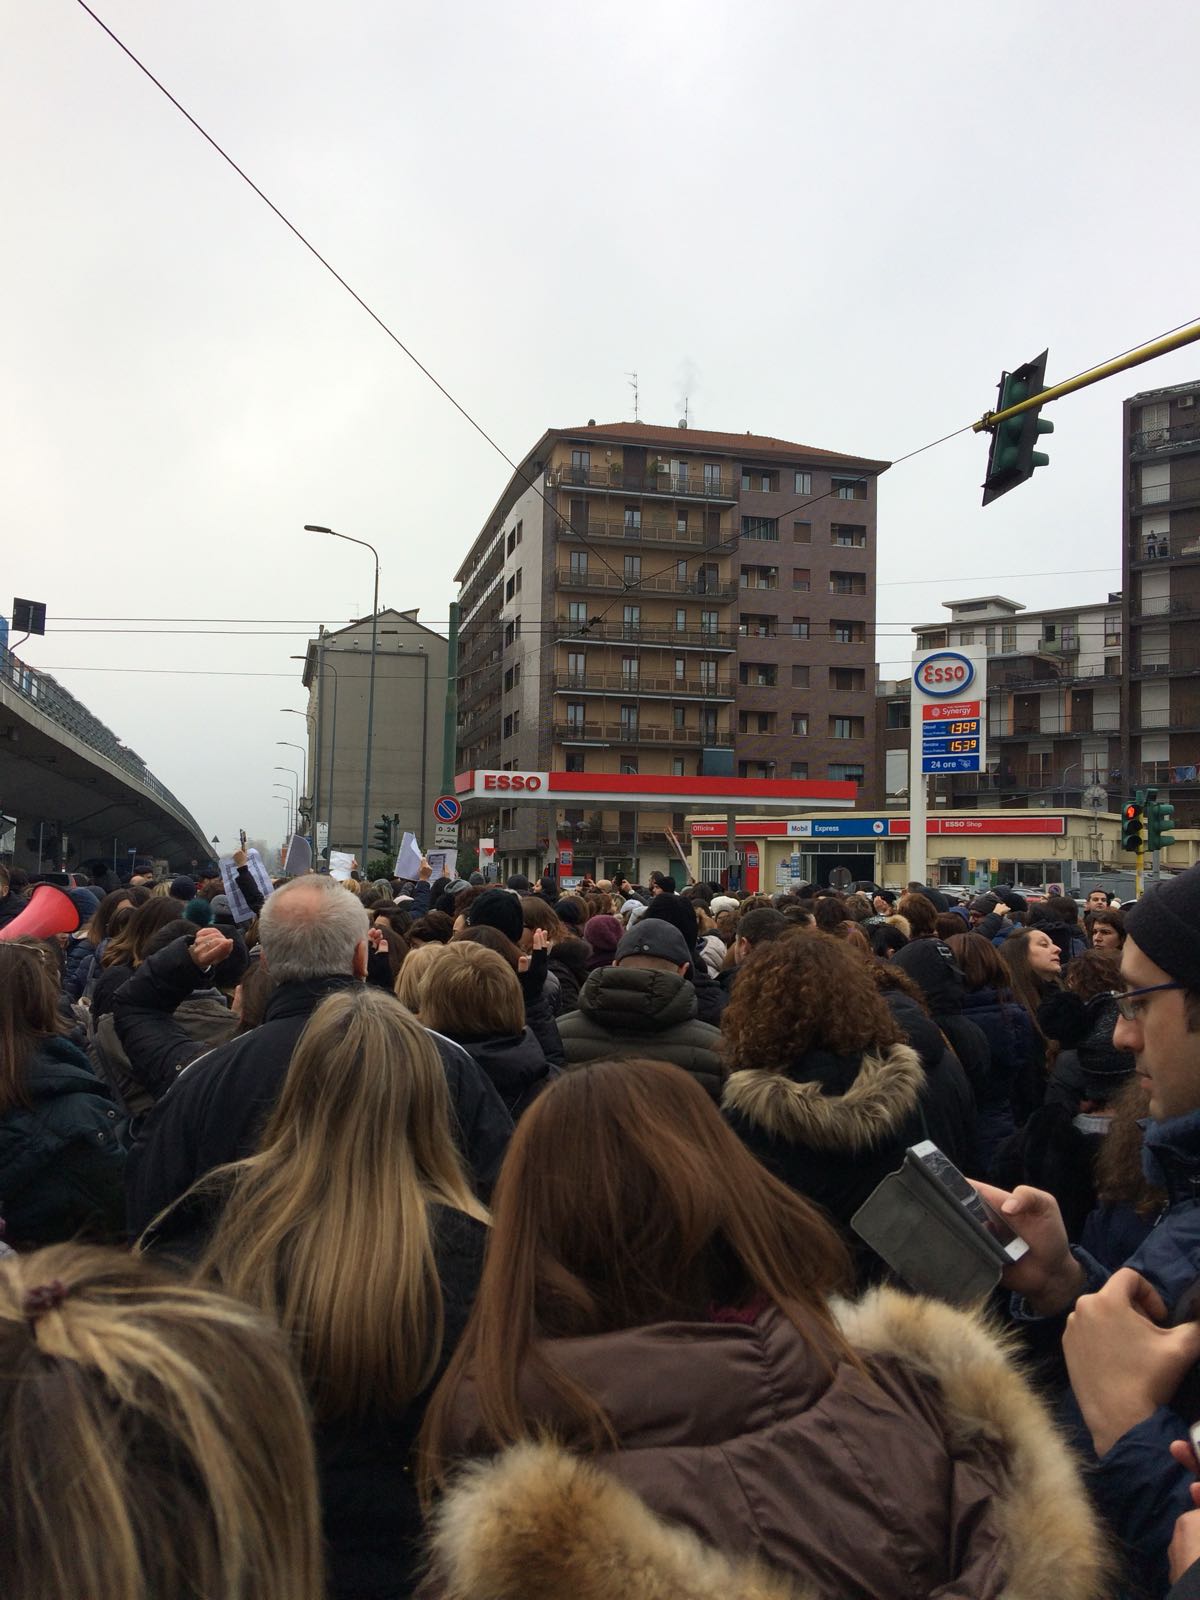 Sciopero scuole protesta dei diplomati magistrali a Milano